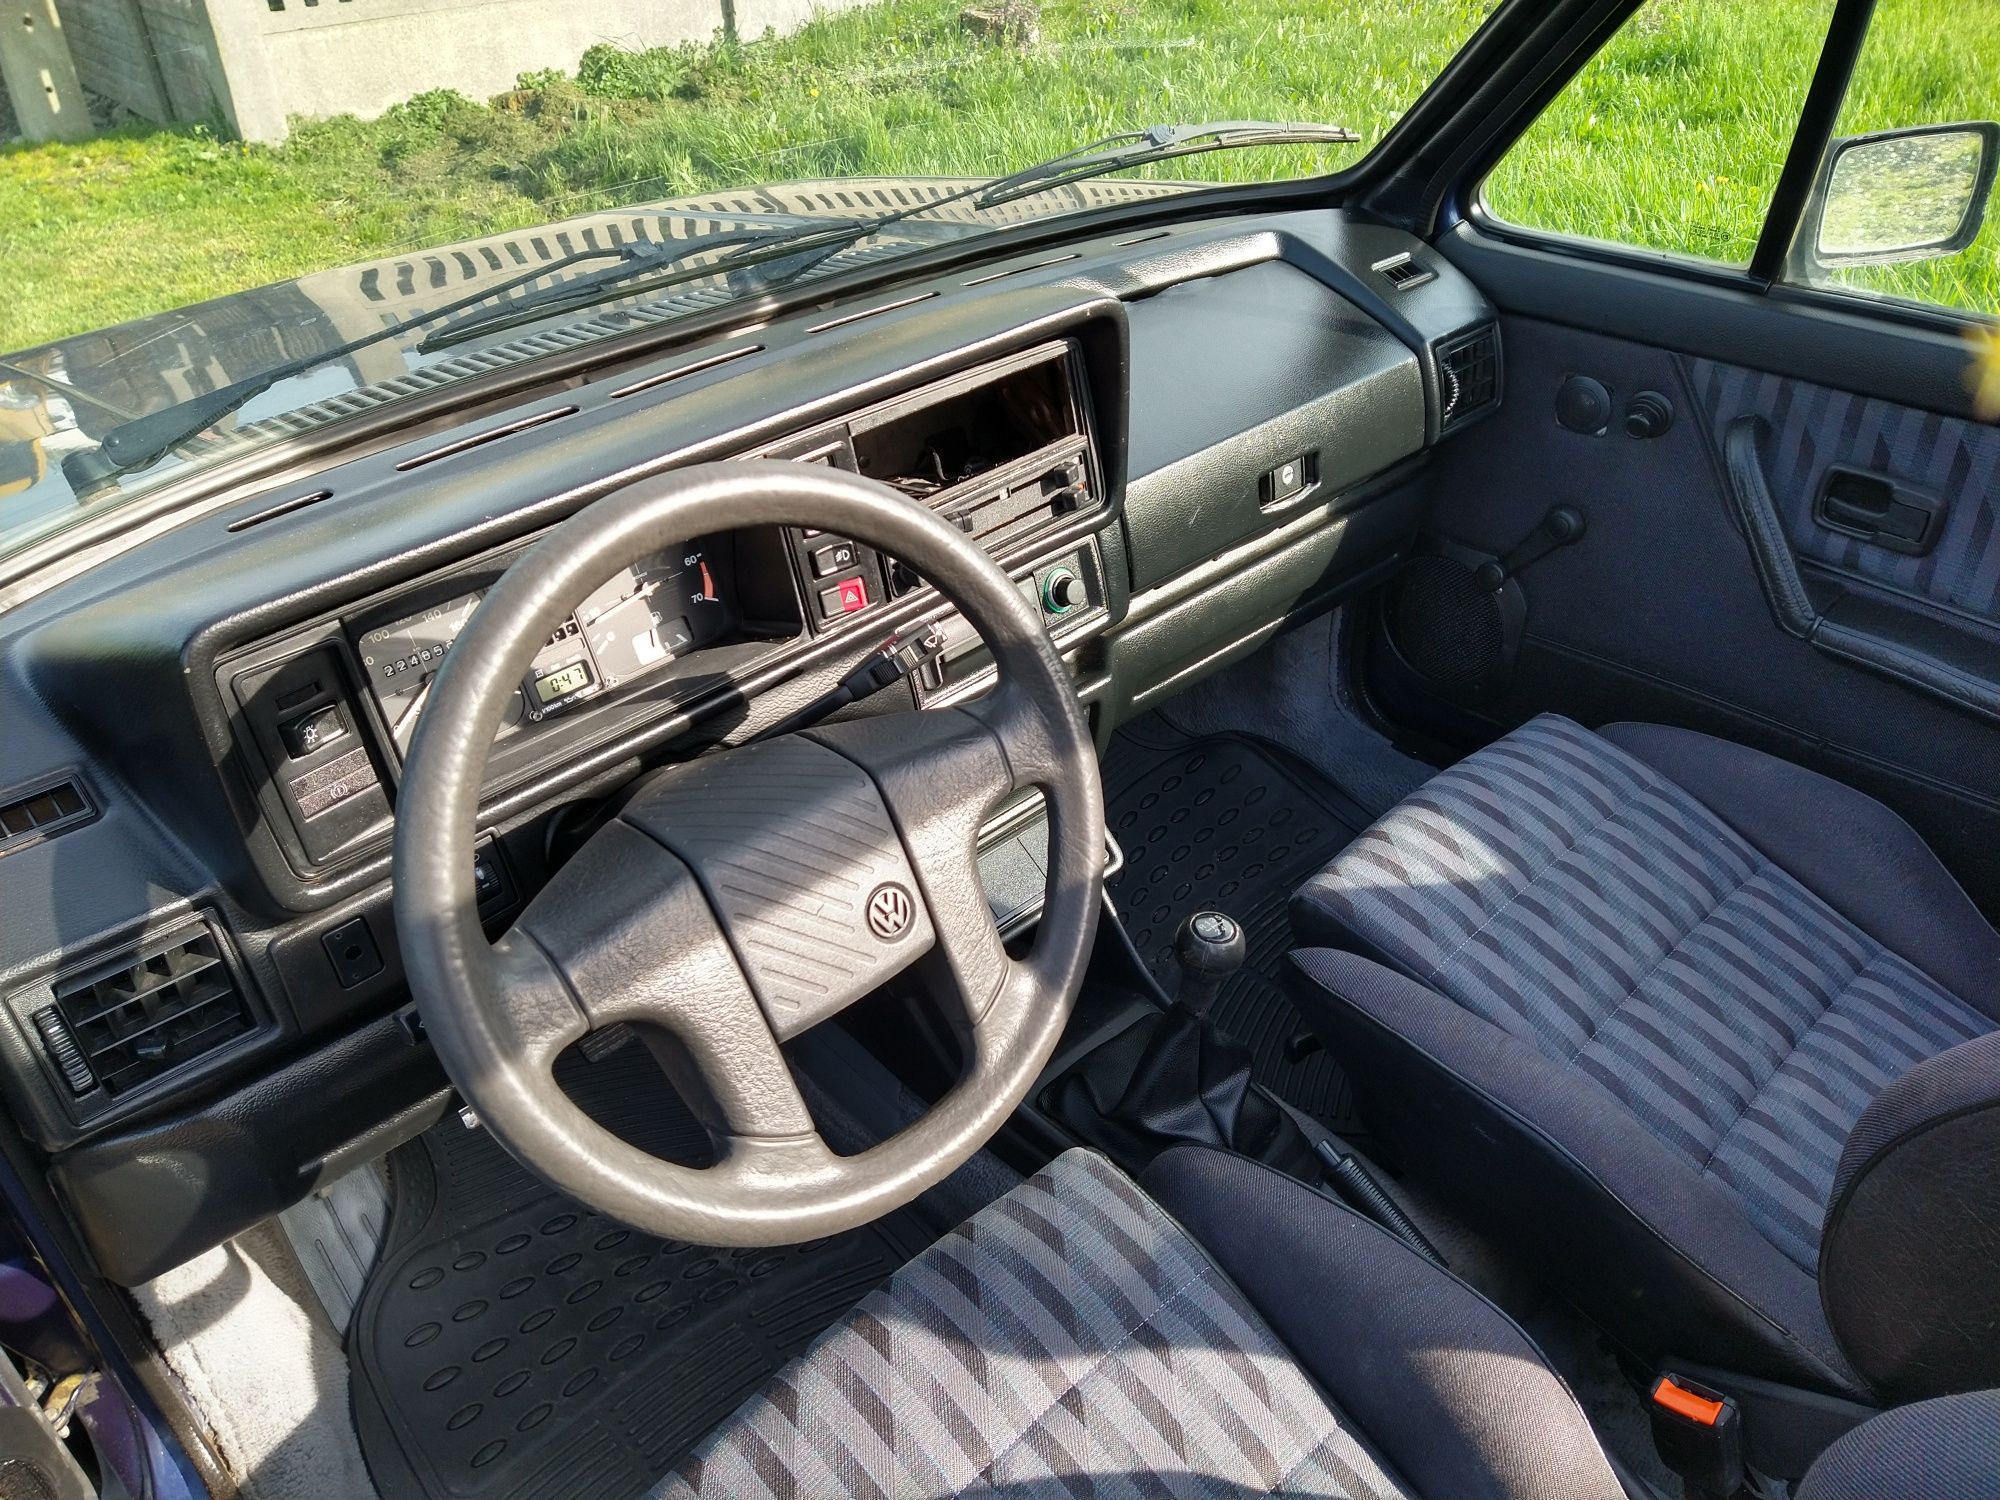 VW Golf 1.8 2h cabrio